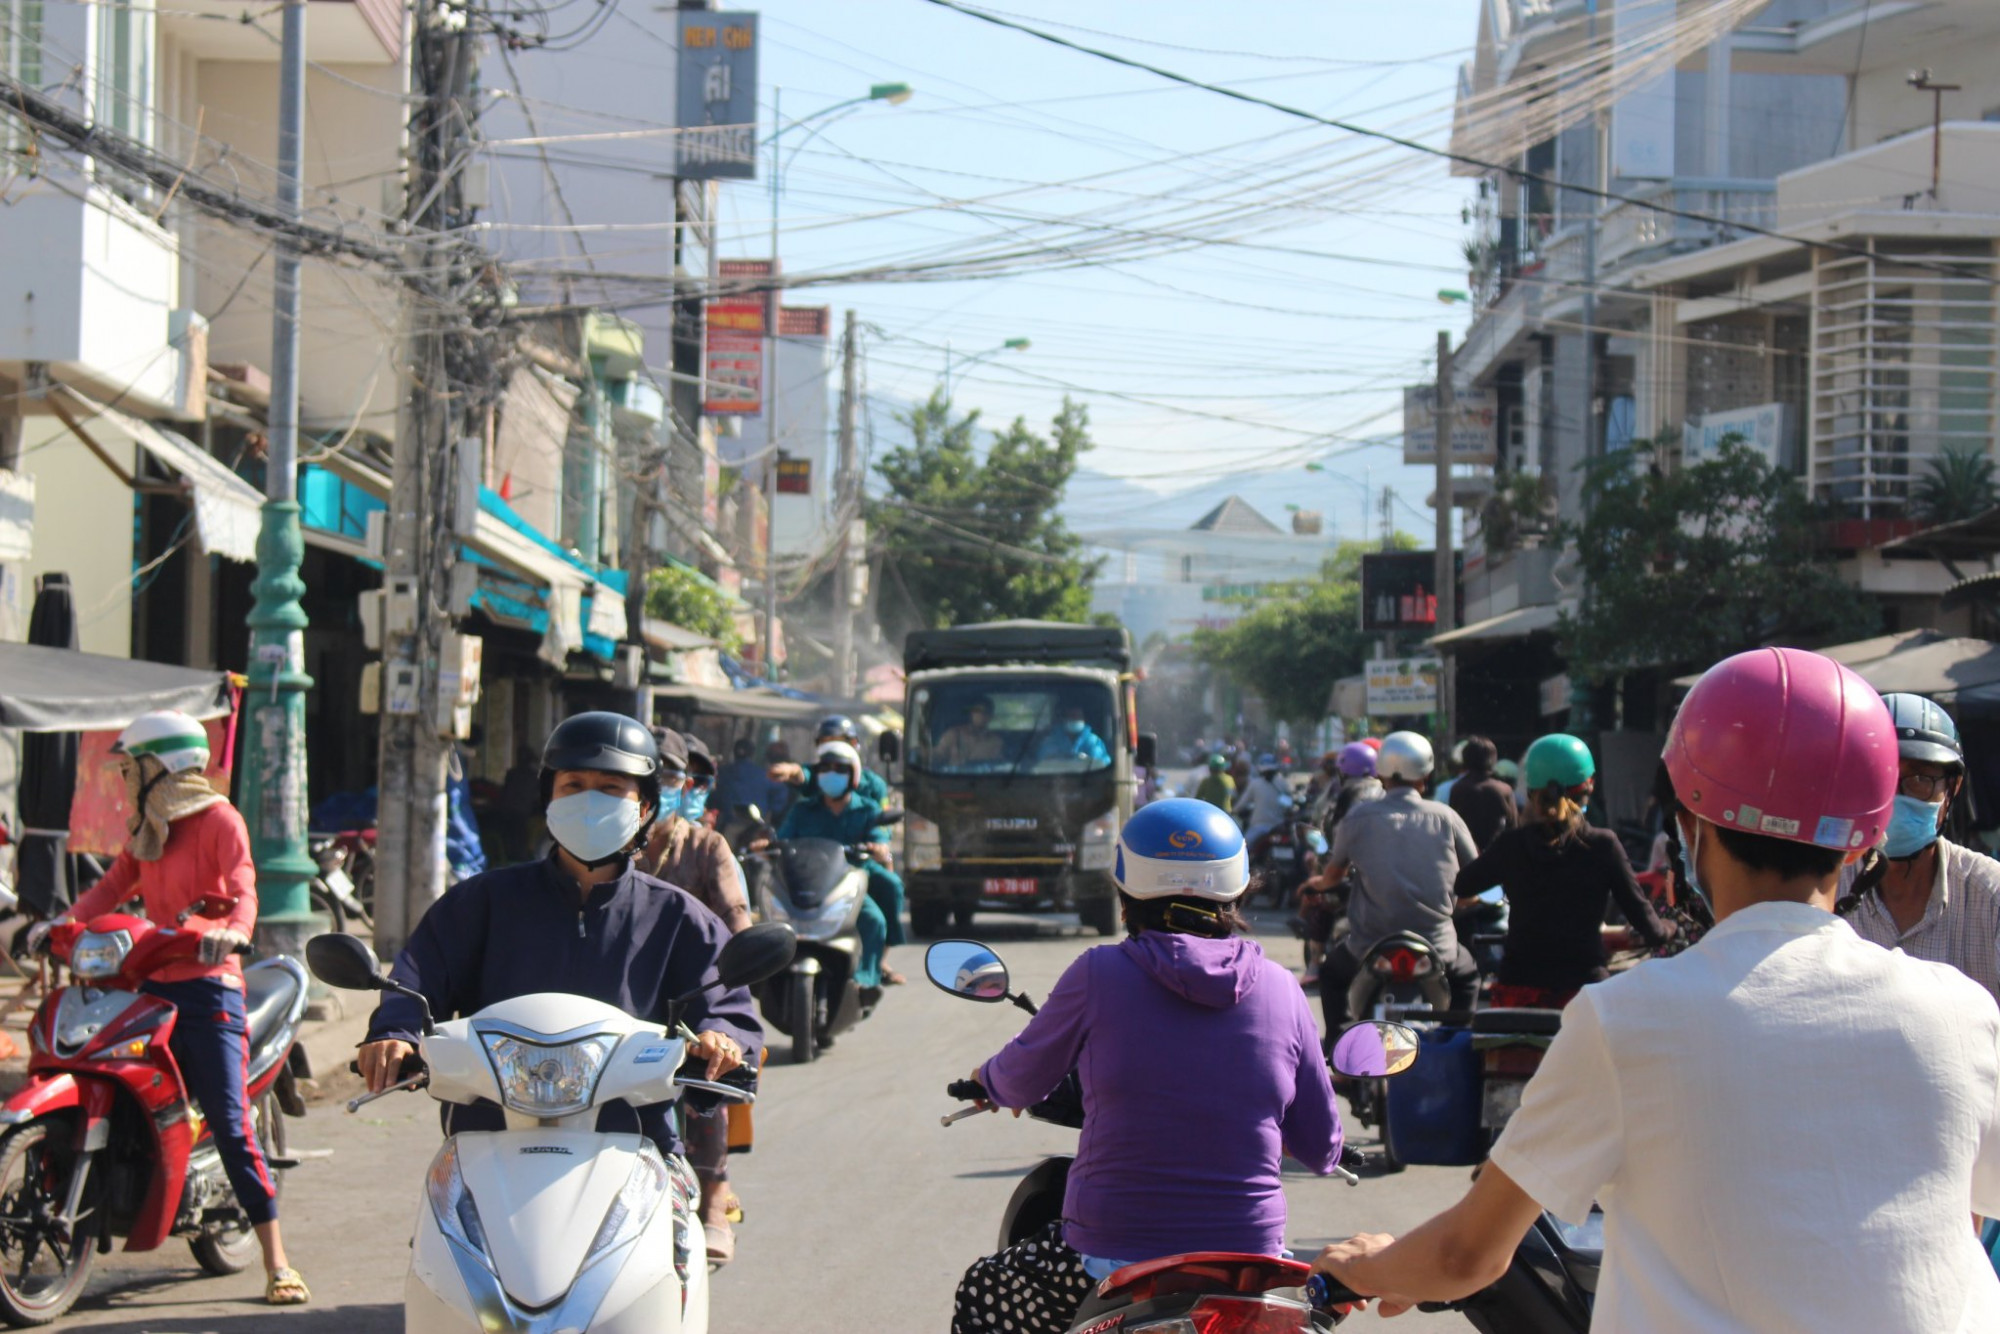 UBND tỉnh Khánh Hòa yêu cầu người dân huyện Diên Khánh không ra khỏi nhà từ 15g đến 22g ngày 10/11 để thực hiện tầm soát cộng đồng - Ảnh minh họa